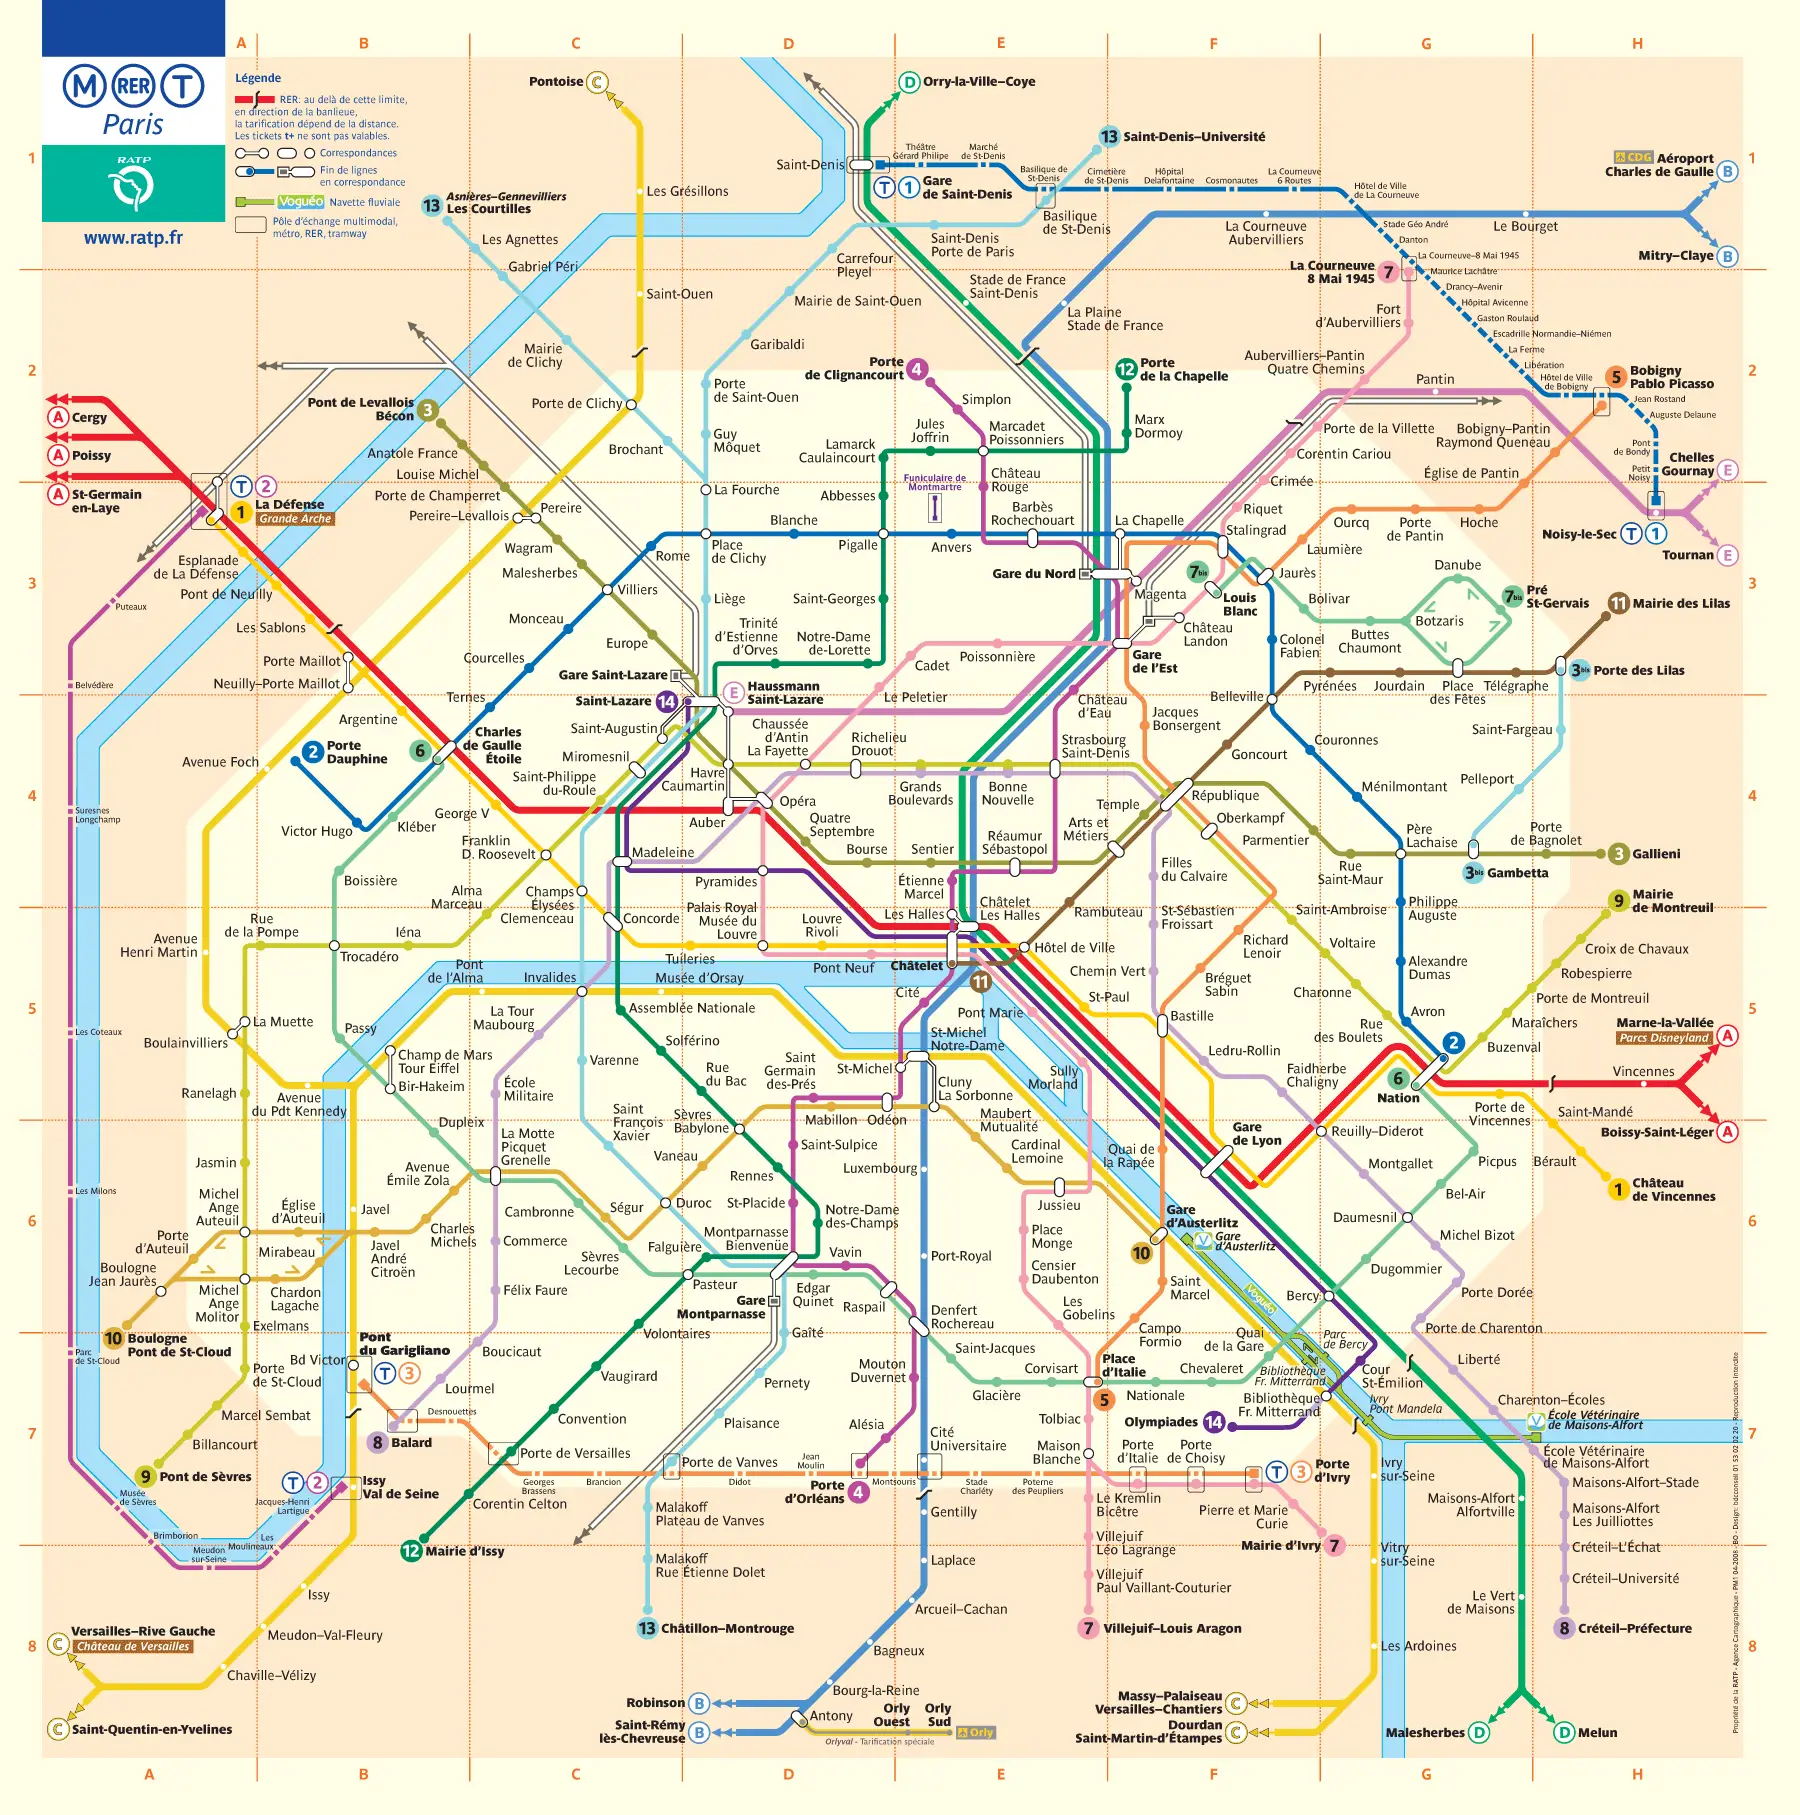 Paris Metro Map • Mapsof.net